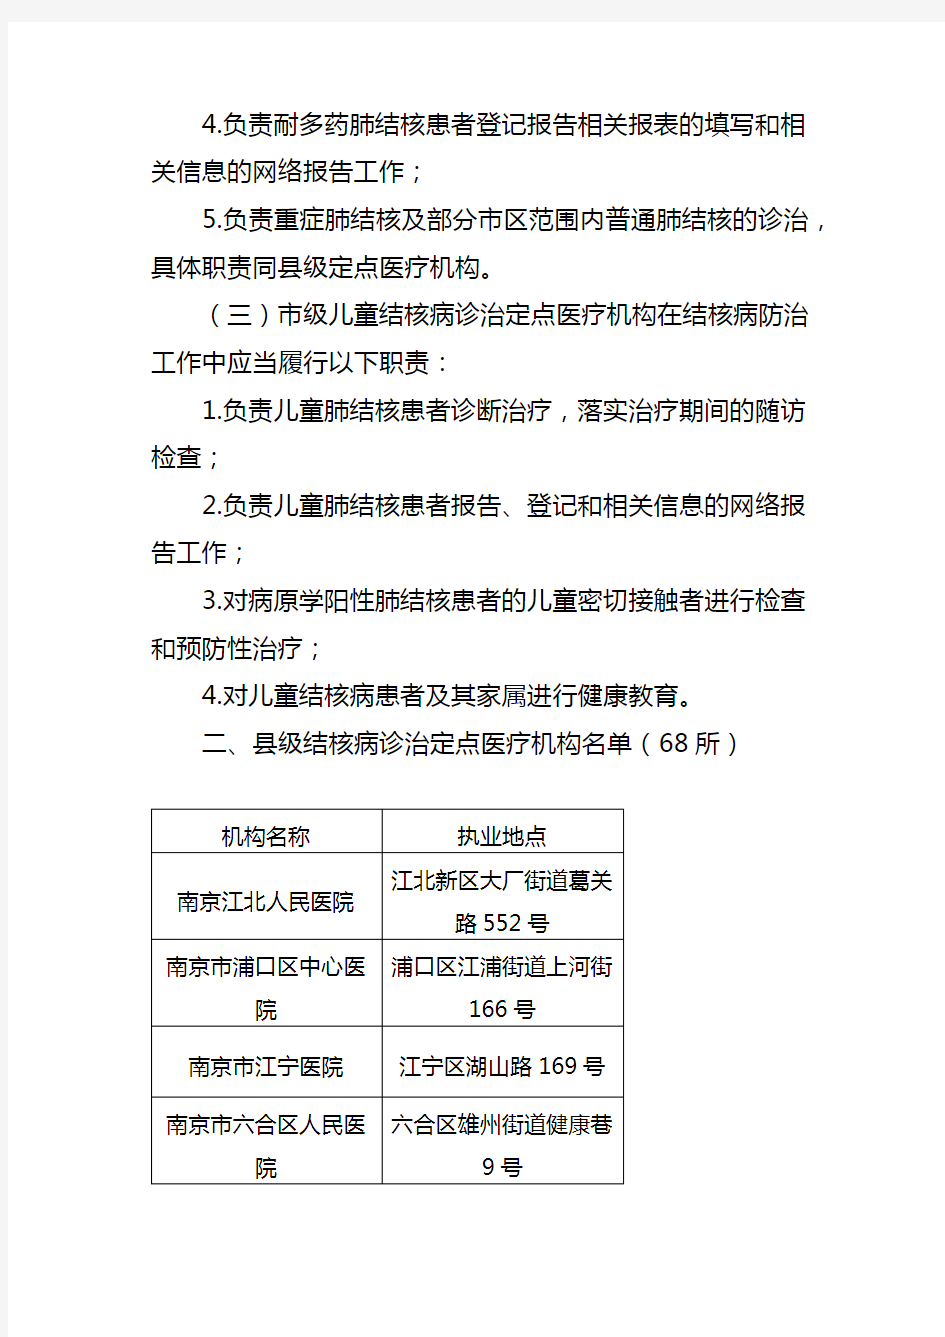 2020年江苏省结核病诊治定点医疗机构职责及名单名单地址